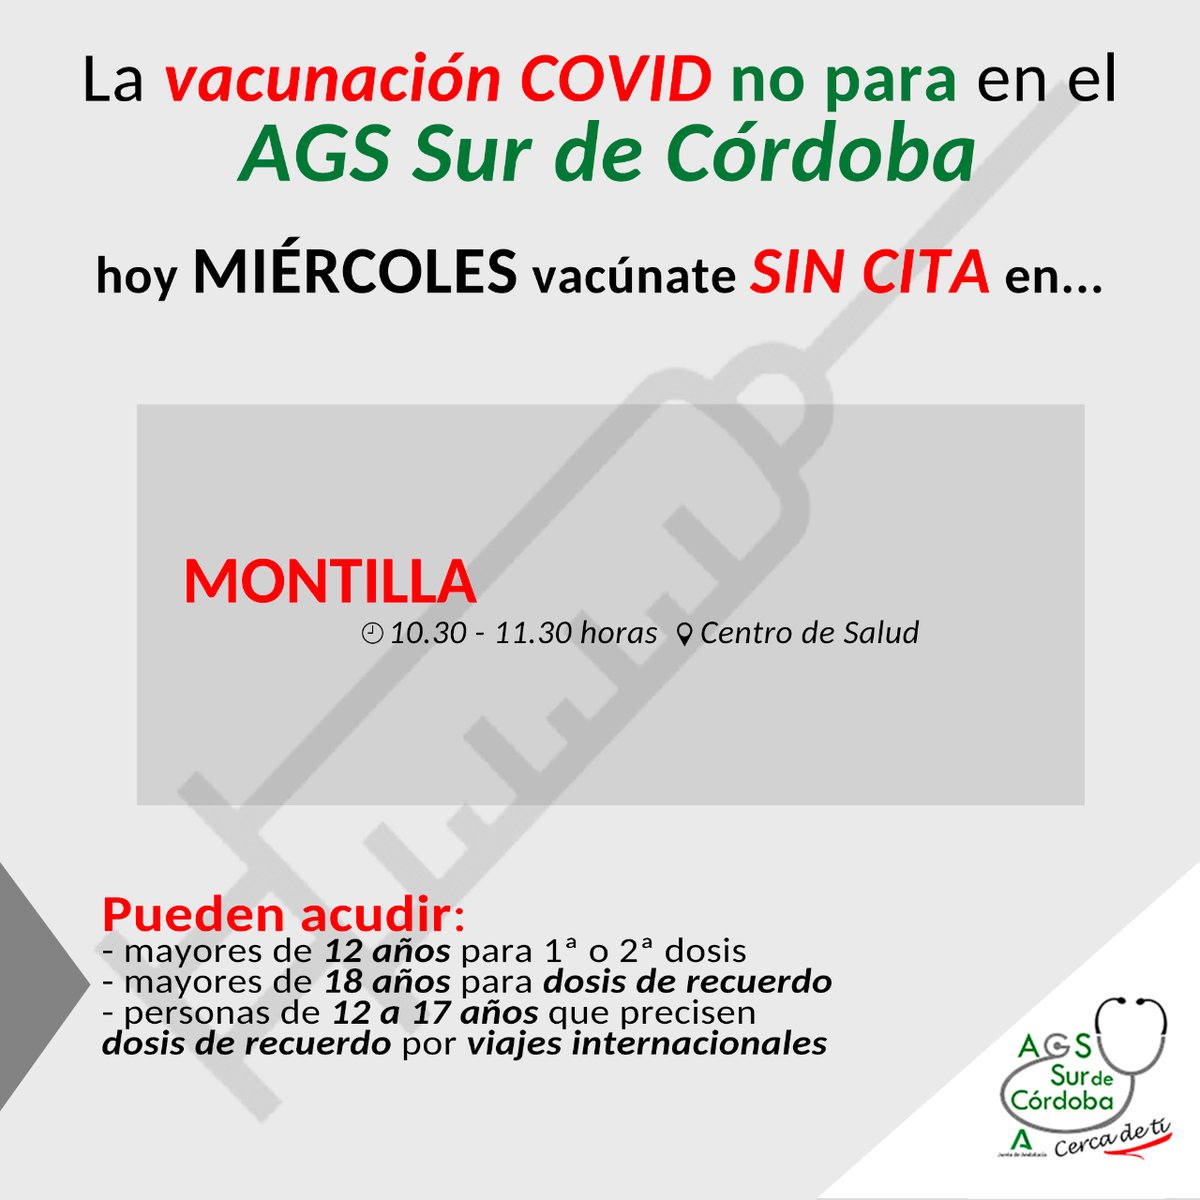 Hoy #MIÉRCOLES puedes vacunarte SIN CITA frente a la #COVID en👇🏻
➡️ #MONTILLA
🕘 10.30-11.30 horas
📍Centro de Salud
Pueden hacerlo si:
➕1️⃣8️⃣ años (dosis de recuerdo)
➕1️⃣2️⃣ años (1ª o 2ª dosis)
✈️ De 1️⃣2️⃣ a 1️⃣7️⃣ años x viajes internacionales
#AGSSurdeCórdoba 
#40añosCercaDeTi